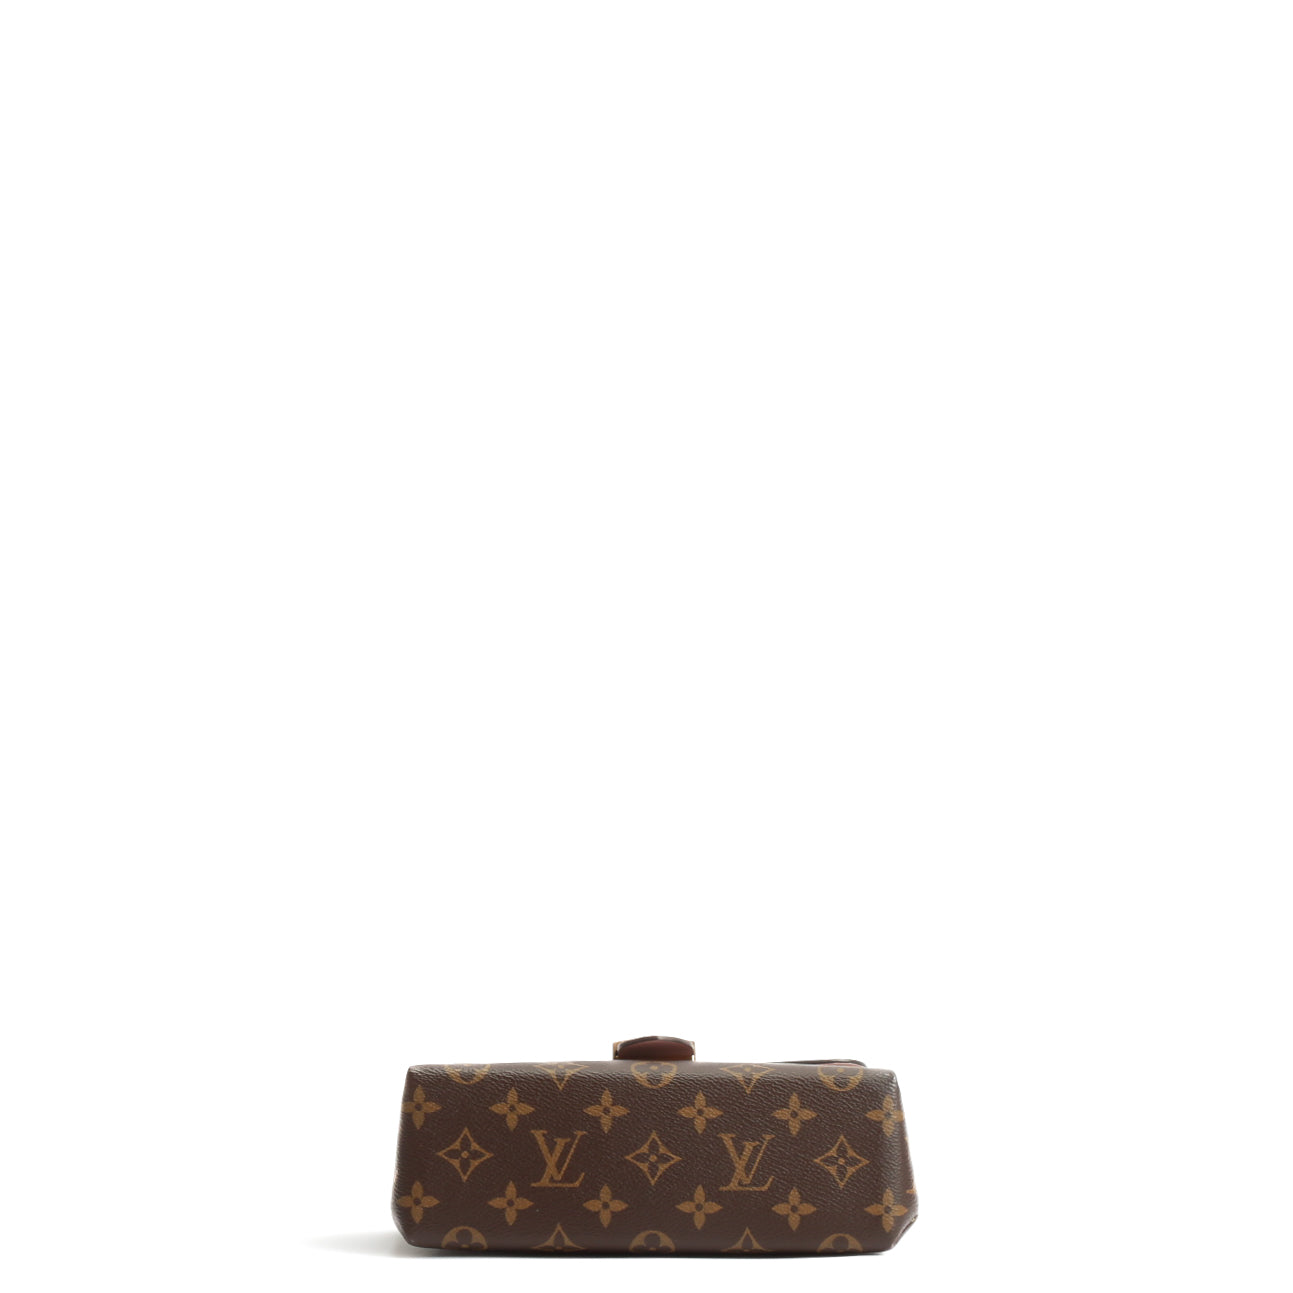 Louis Vuitton Monogram Speedy Bandoulière 20 Black Strap Unboxing & Review  